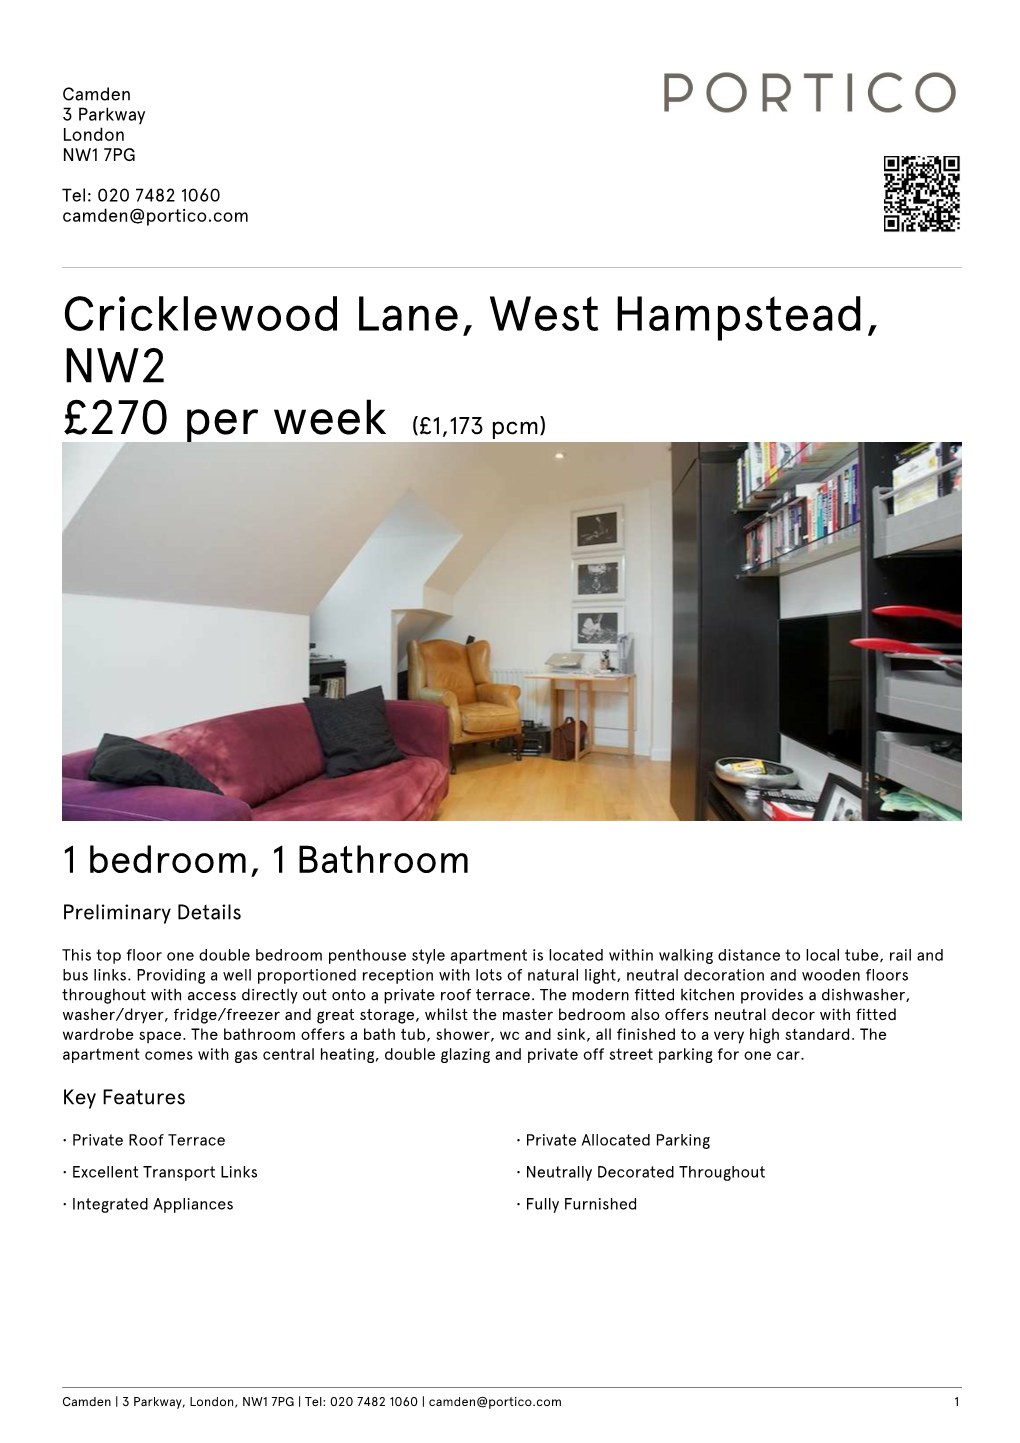 Cricklewood Lane, West Hampstead, NW2 £270 Per Week